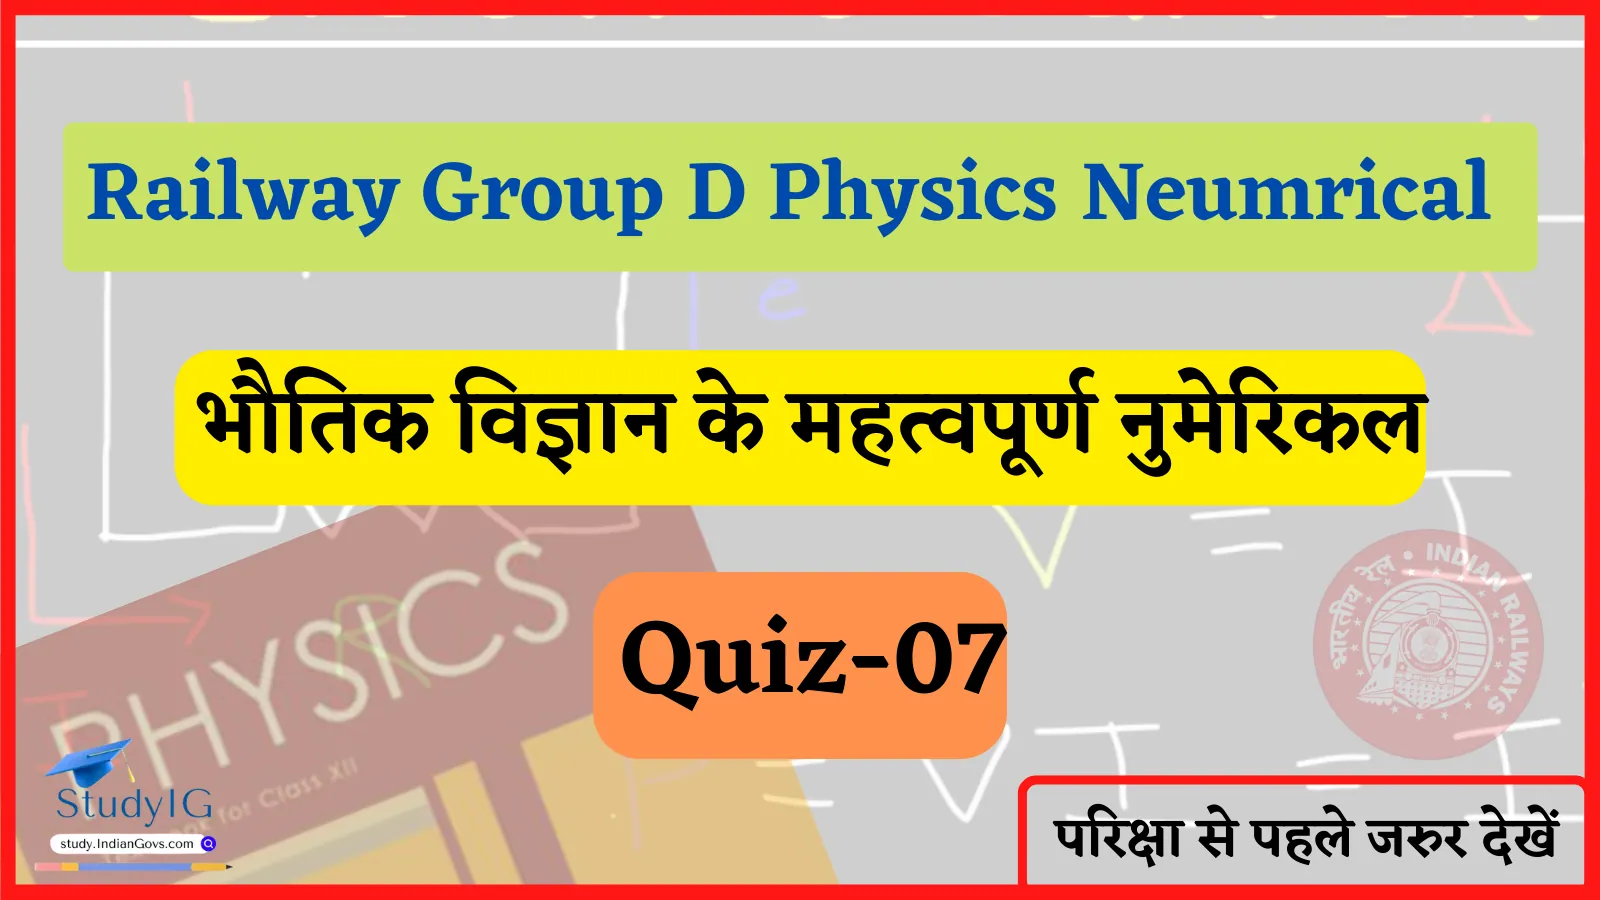 Railway Group D Physics Numerical Quiz- 07